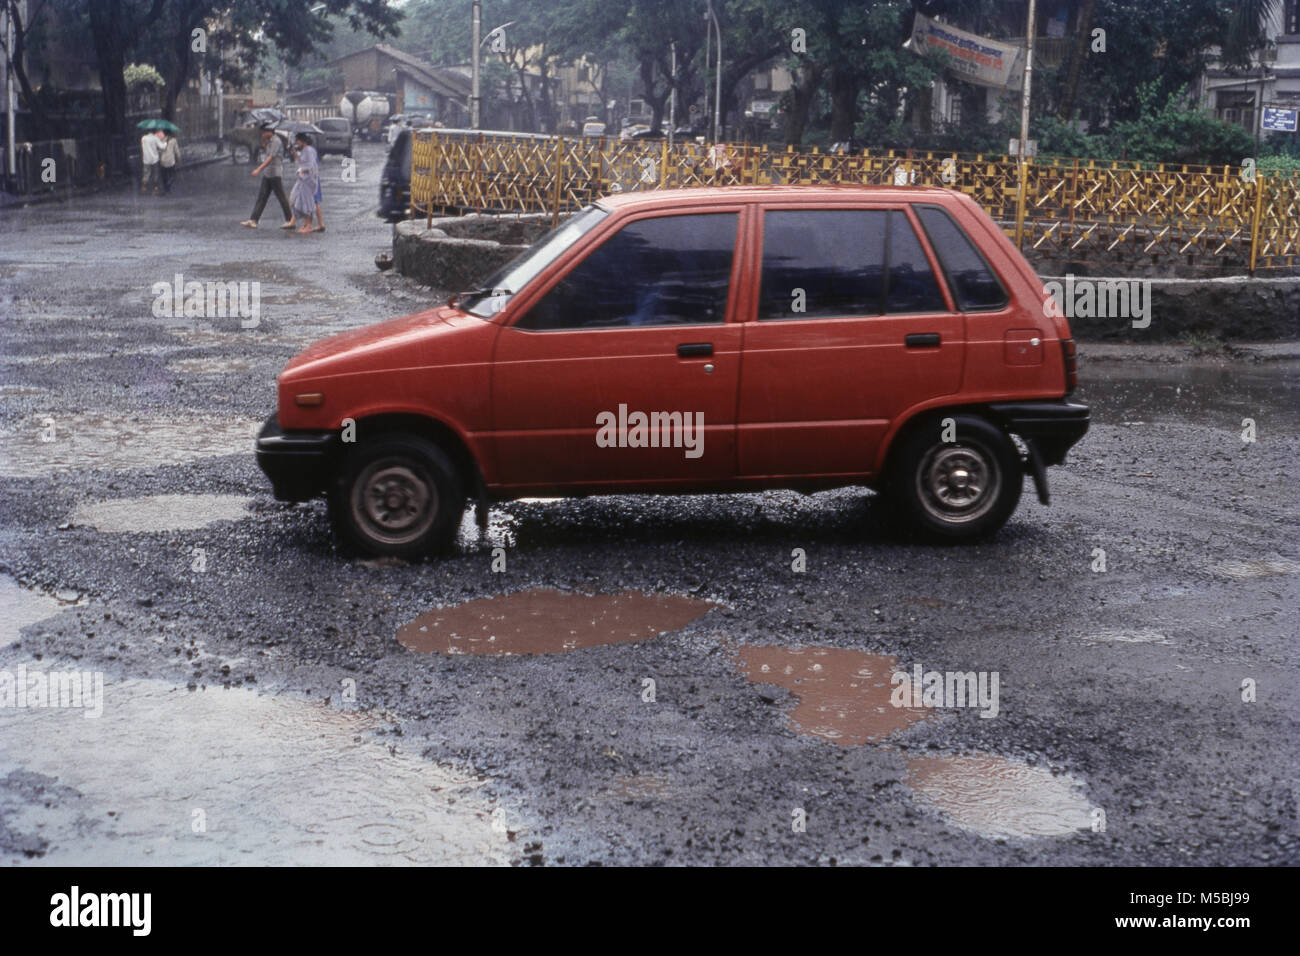 Side view of Maruti car going through potholes, Mumbai, India Stock Photo